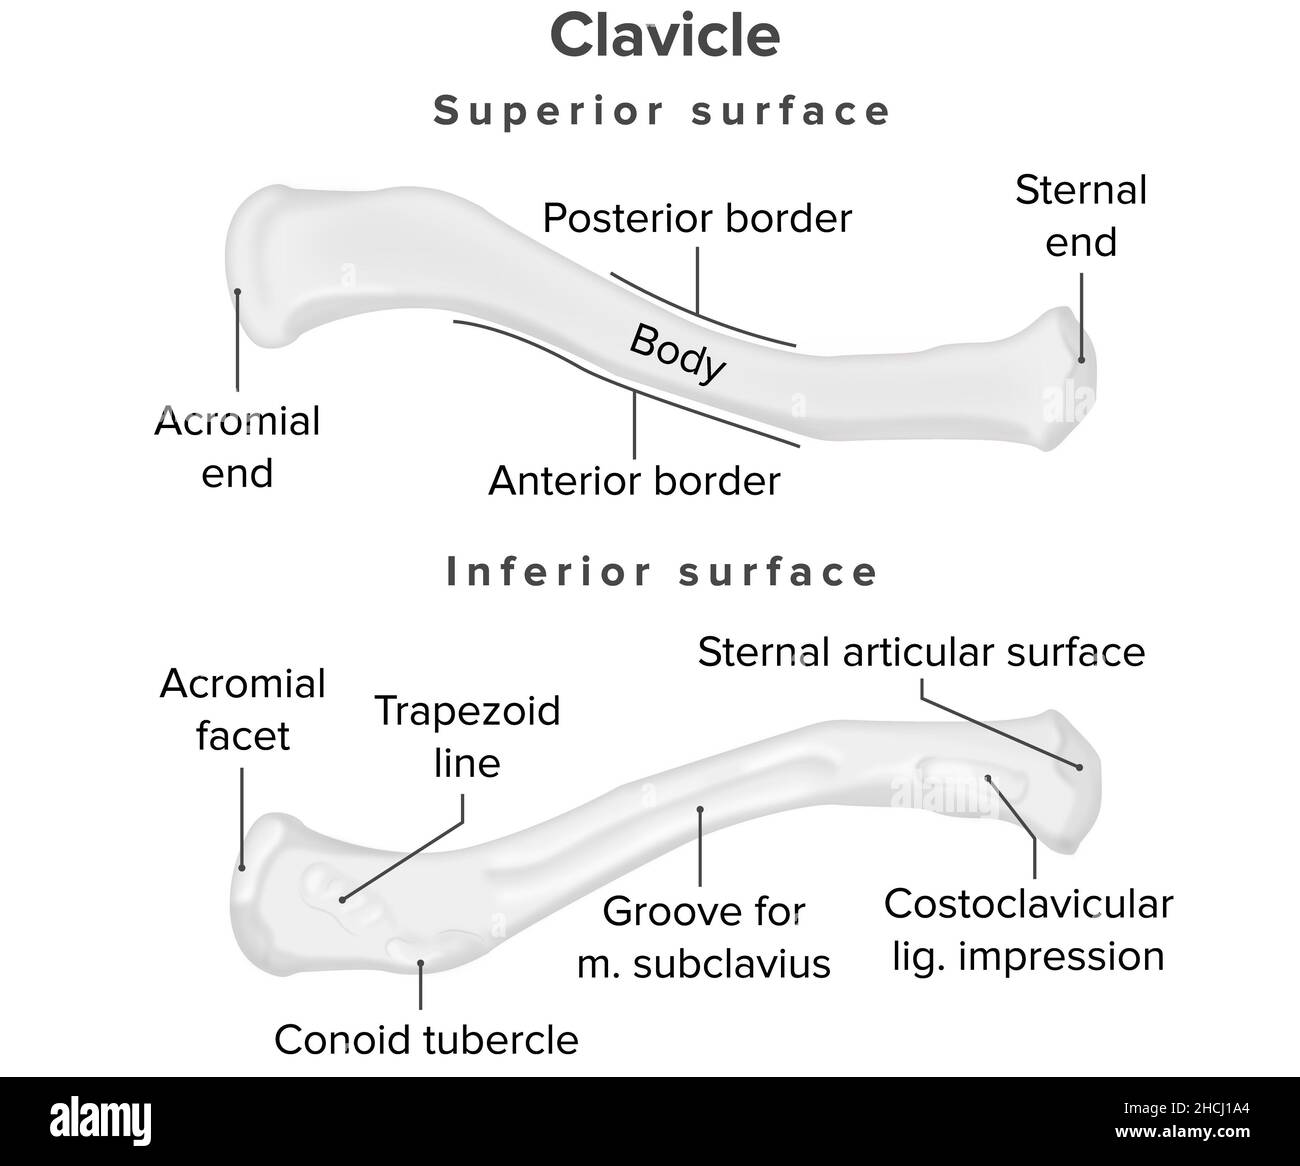 Clavicule, surface supérieure, anatomie humaine Banque D'Images